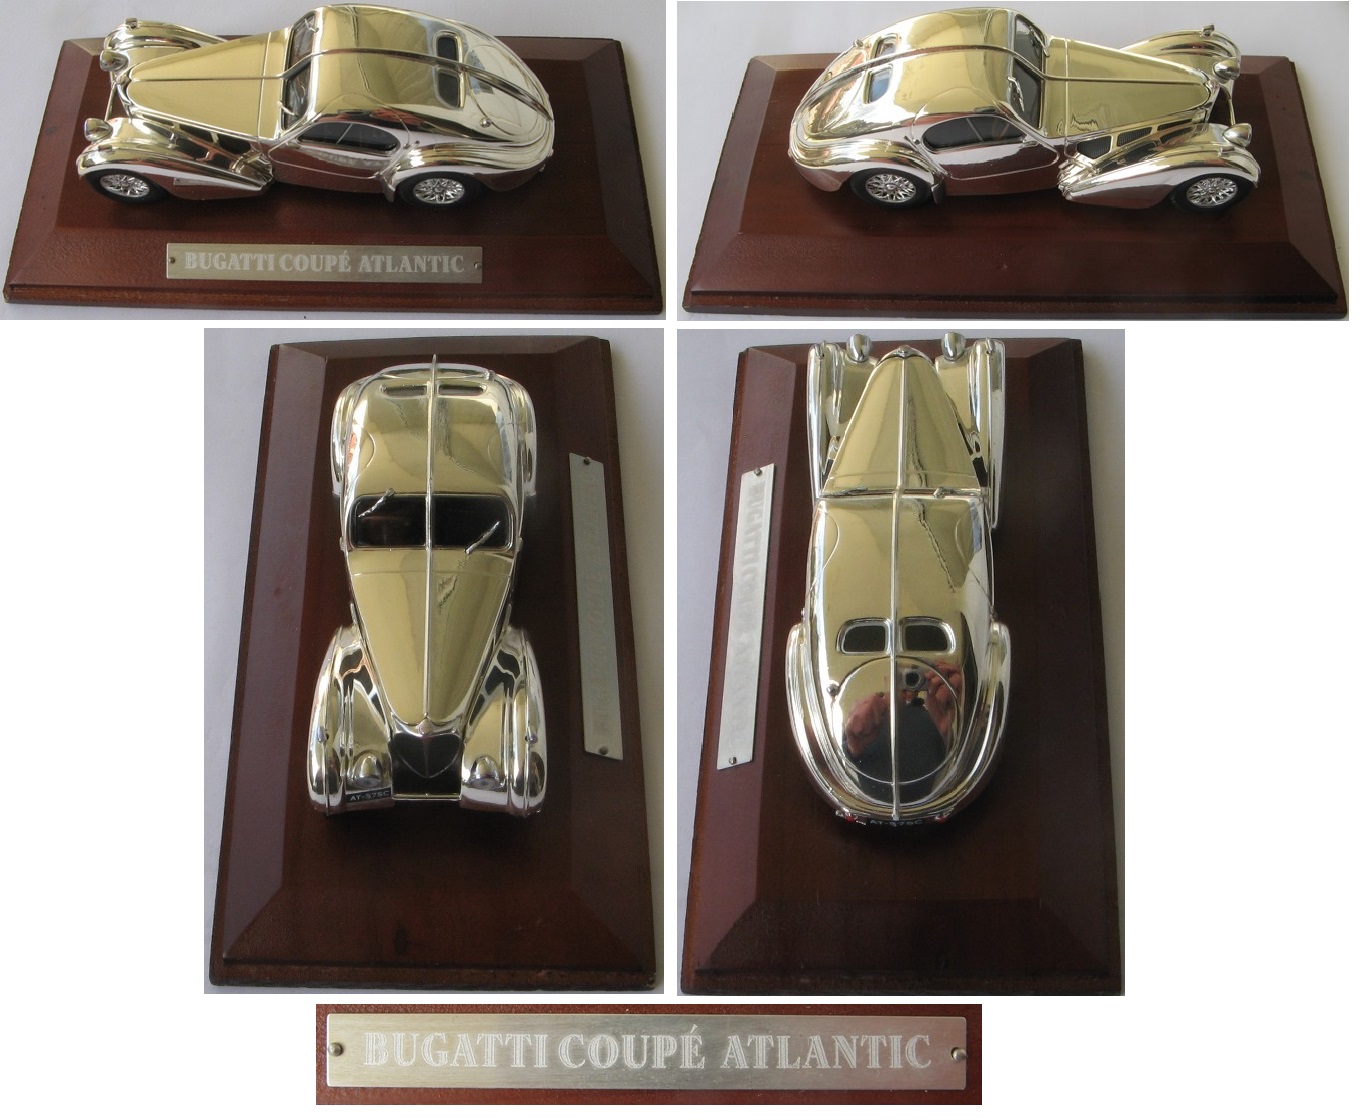  Bugatti Coupe' Atlantic-Silver Cars Collection 1/43- car model-original box   